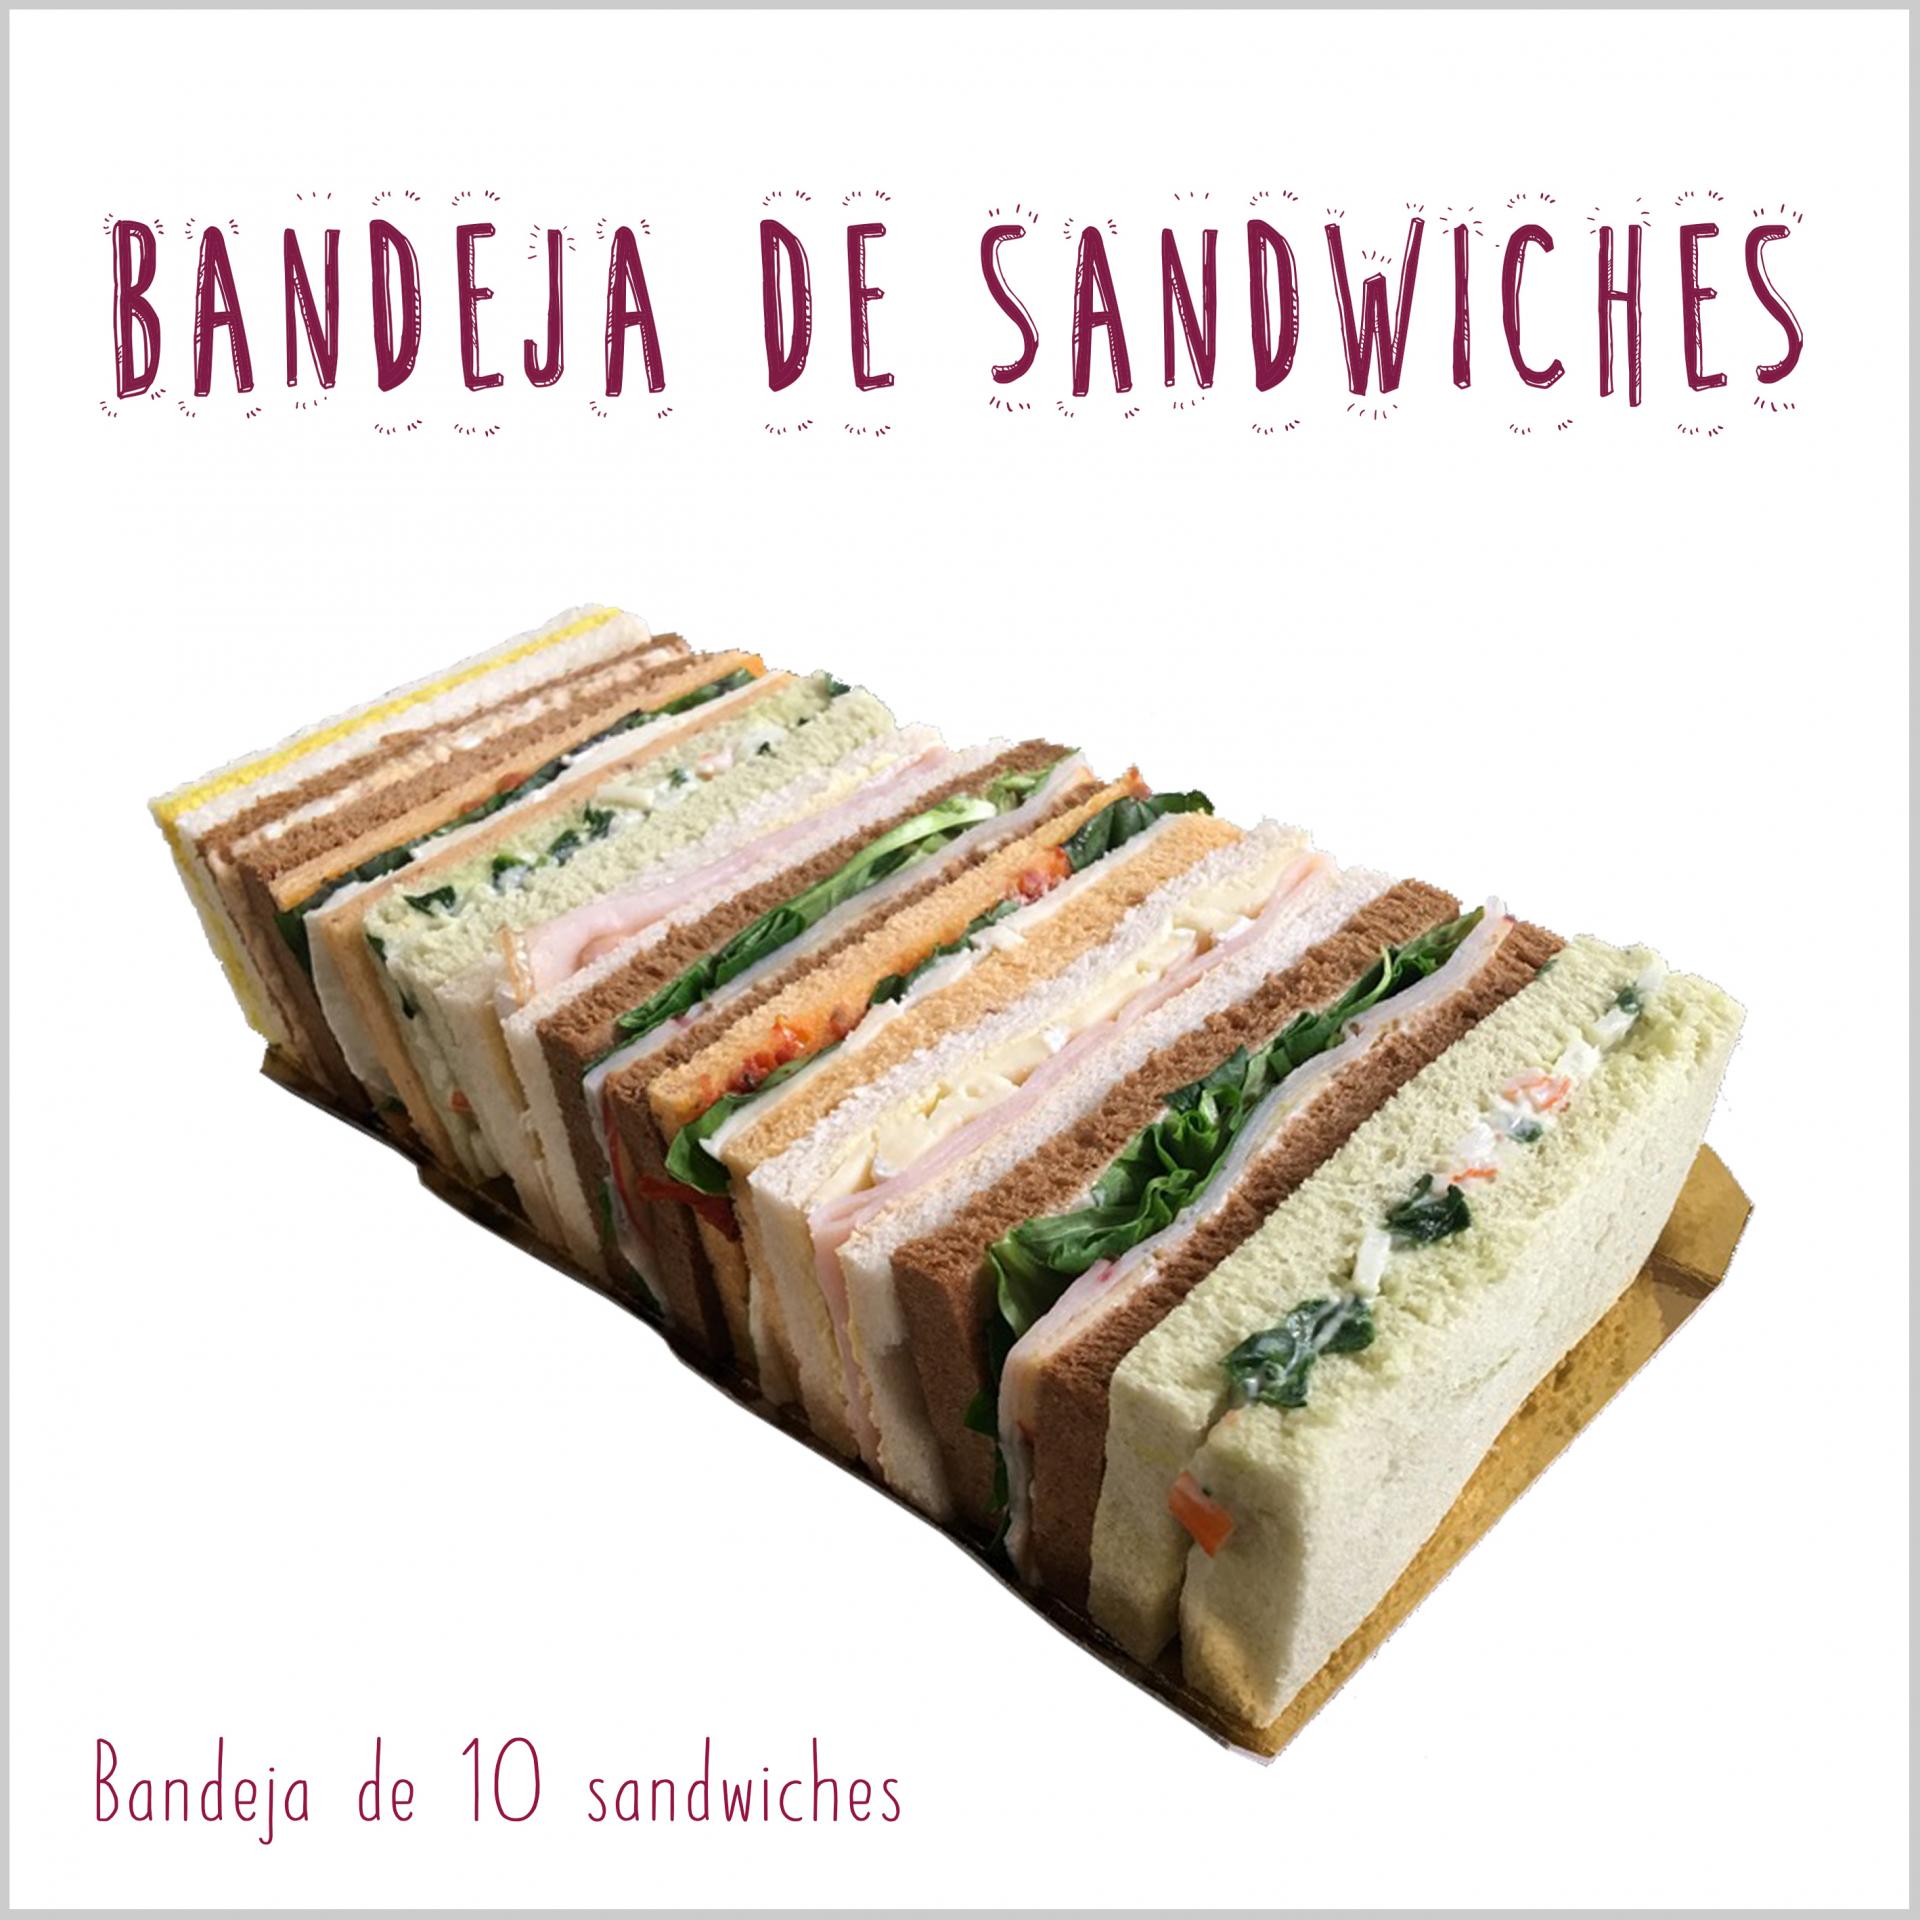 Bandeja de sandwiches